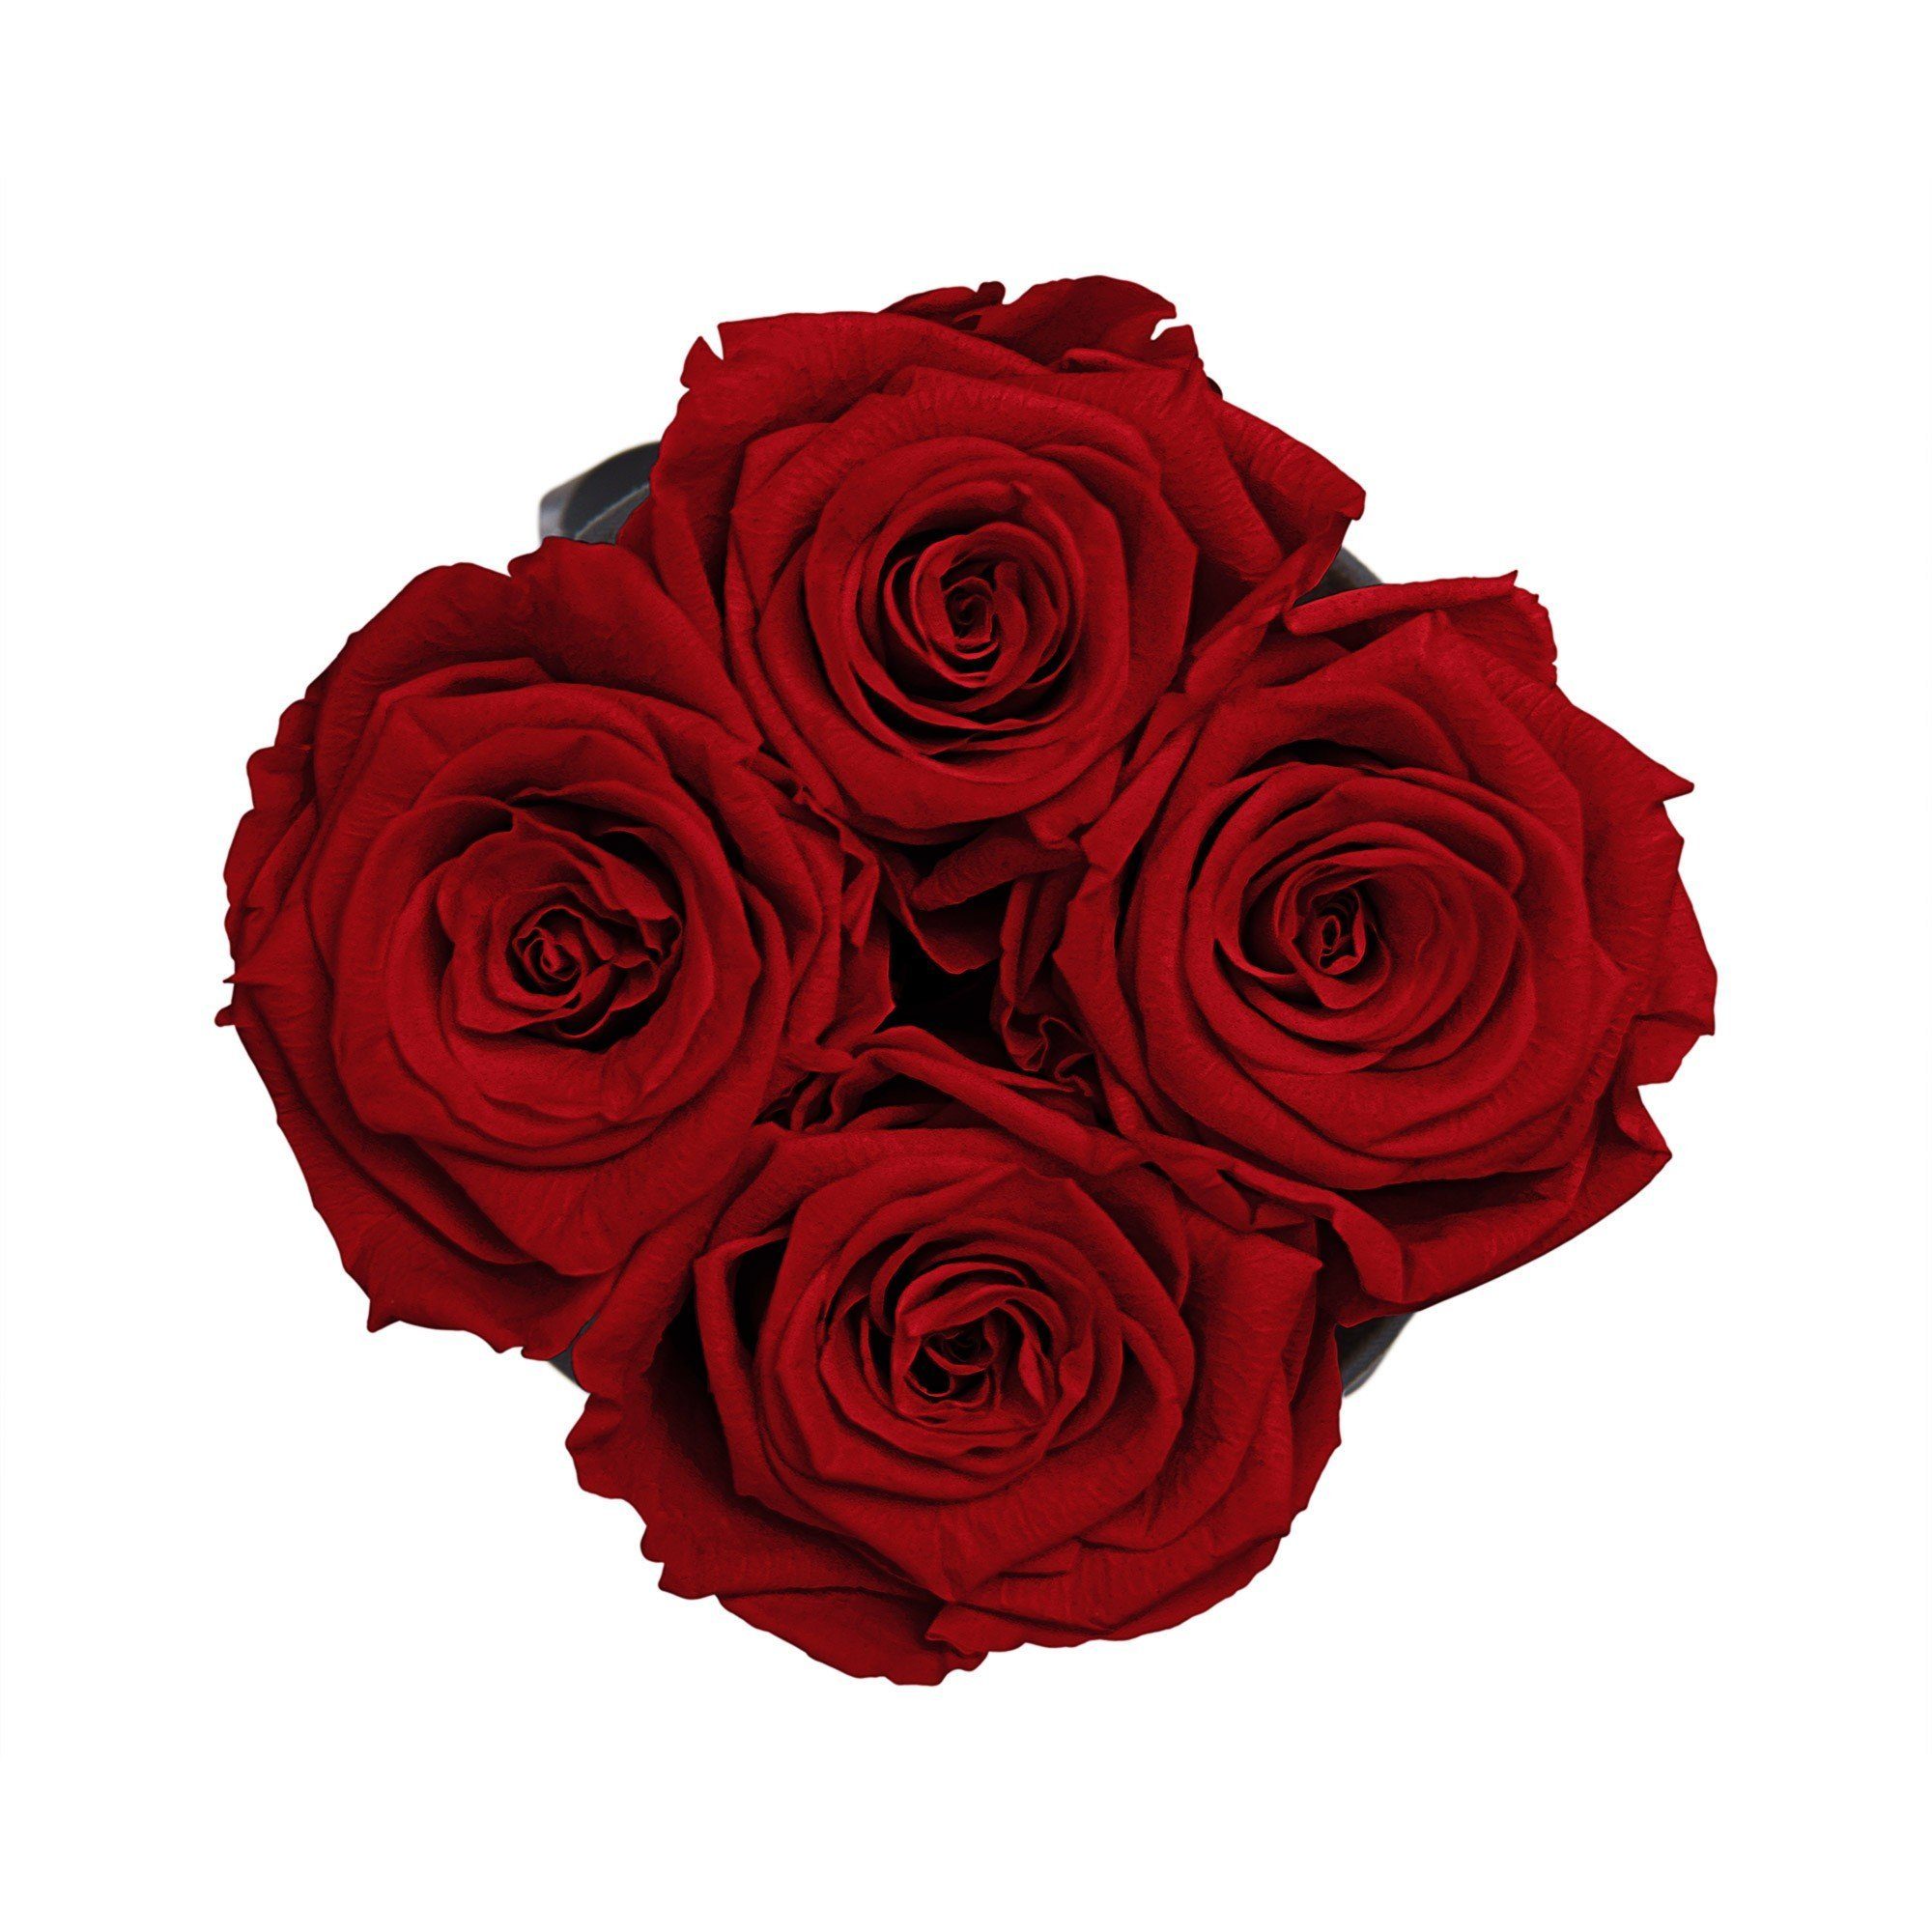 Kunstblume Runde Rosenbox in schwarz Echte, Flowers, Blumen konservierte duftende Jahre Raul Richter Infinity Rosen haltbar Holy I I Infinity Rose, 11 by 4-5 3 cm I Red Höhe Heritage mit